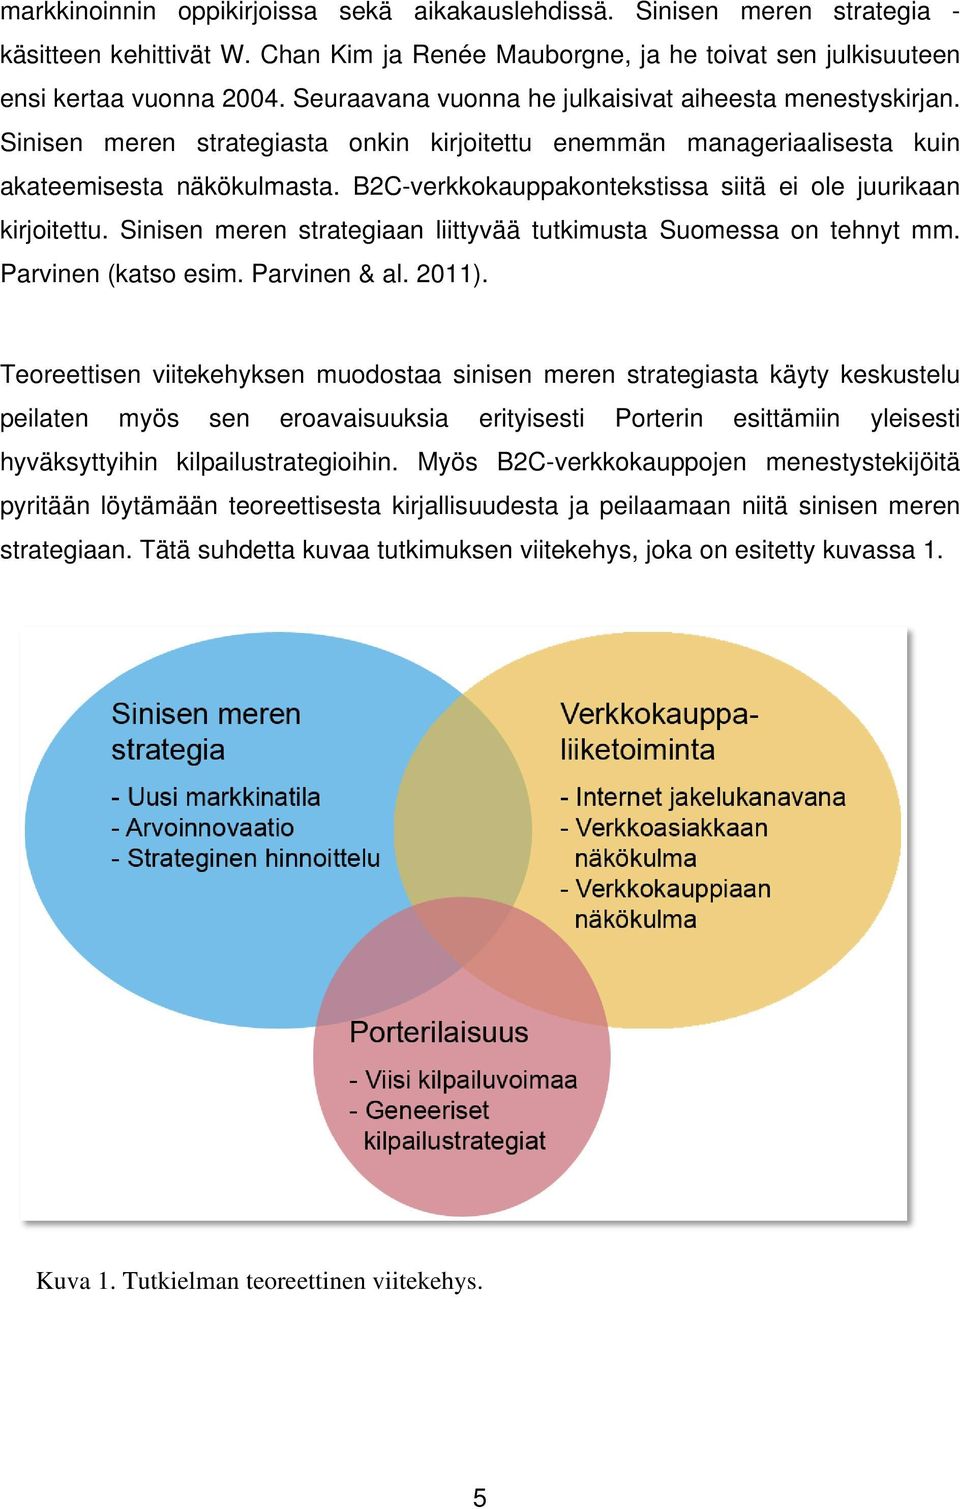 B2C-verkkokauppakontekstissa siitä ei ole juurikaan kirjoitettu. Sinisen meren strategiaan liittyvää tutkimusta Suomessa on tehnyt mm. Parvinen (katso esim. Parvinen & al. 2011).